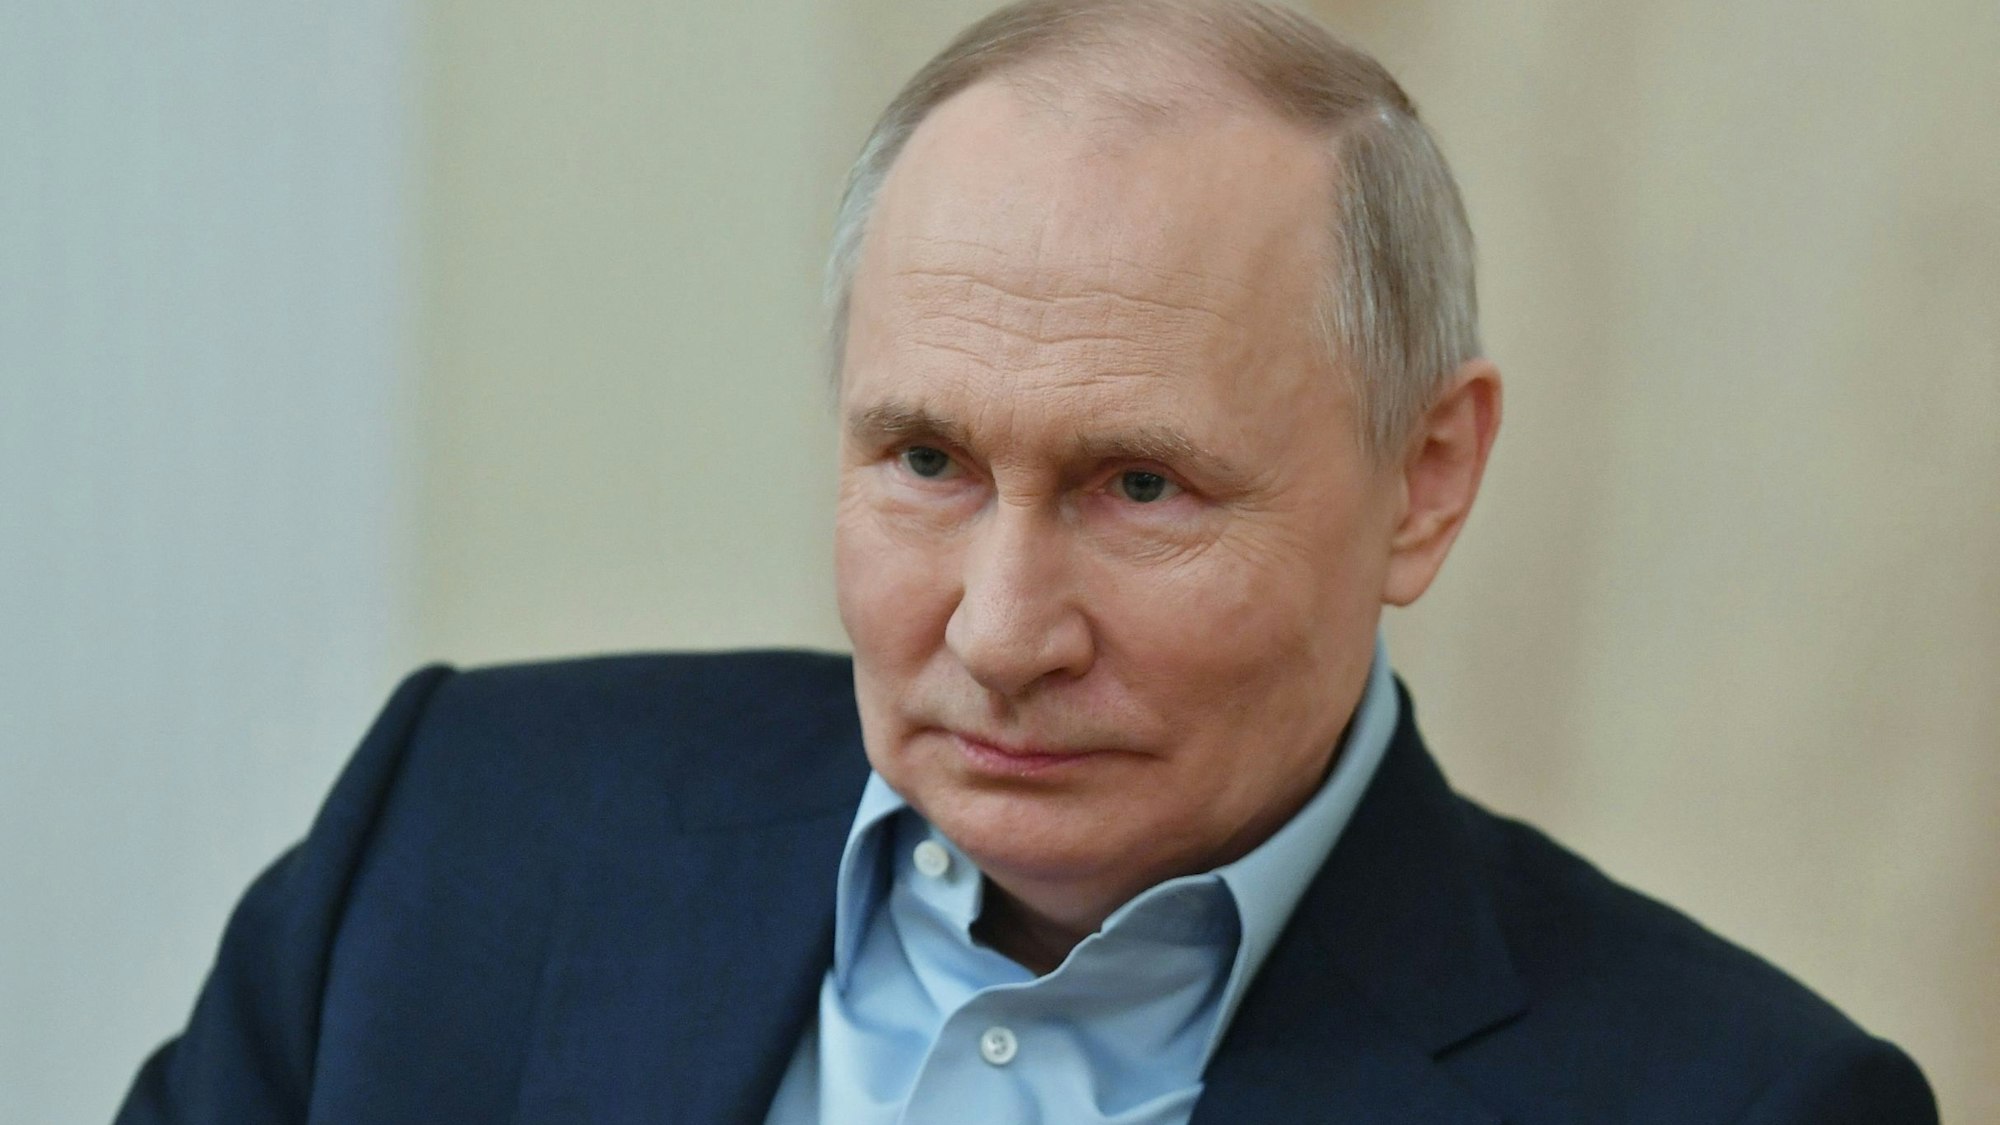 Eine Nahaufnahme des russischen Präsidenten Vladimir Putin. Er trägt einen Anzug und ein hellblaues Hemd.